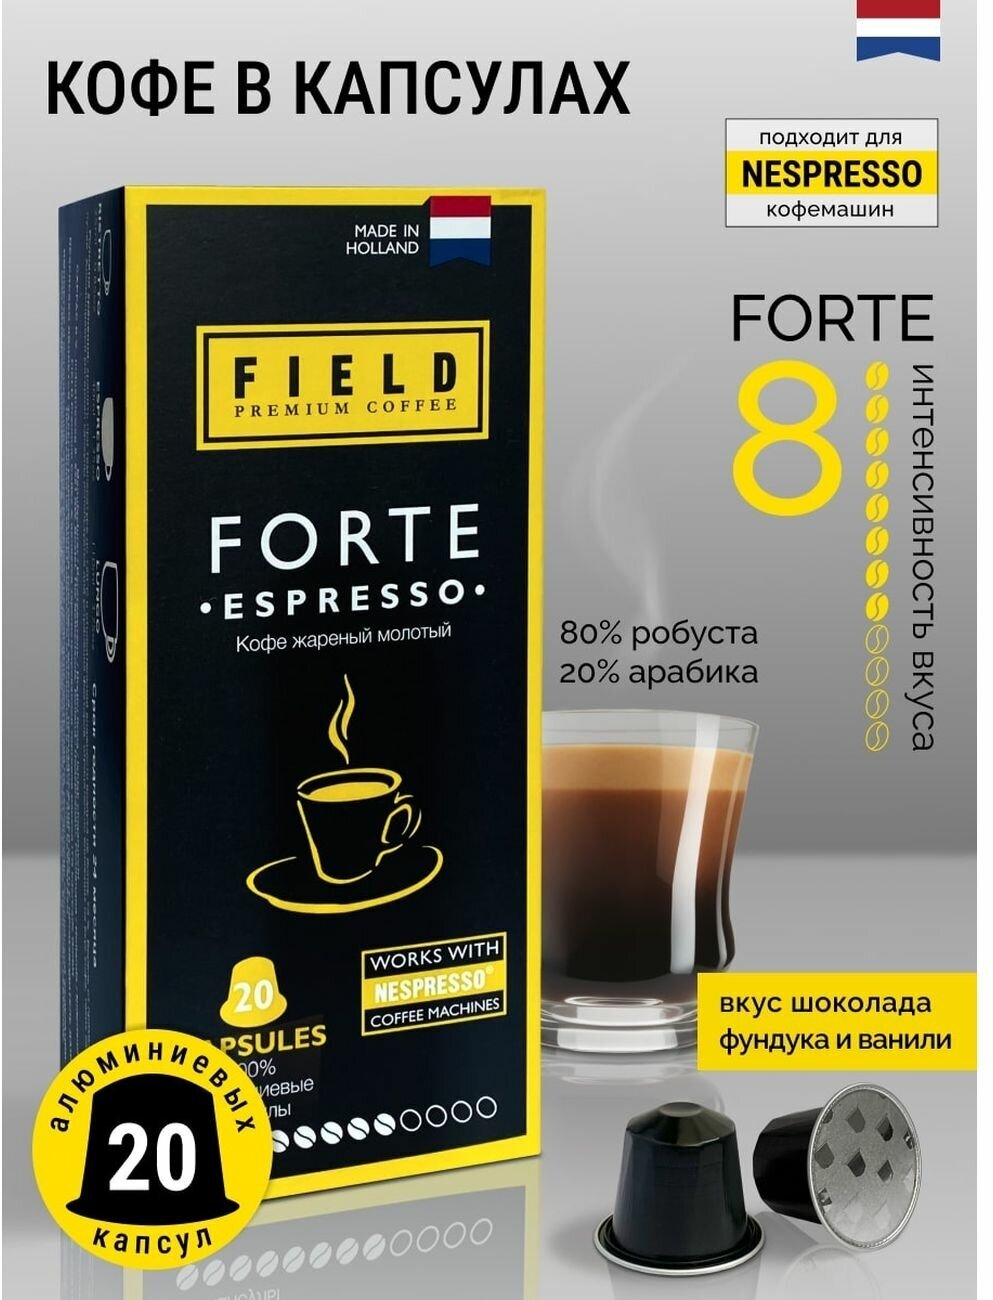 Кофе в капсулах Nespresso 20 шт алюминиевых капсул, молотый Field Premium Coffee Espresso FORTE. Интенсивность вкуса 8 - фотография № 2